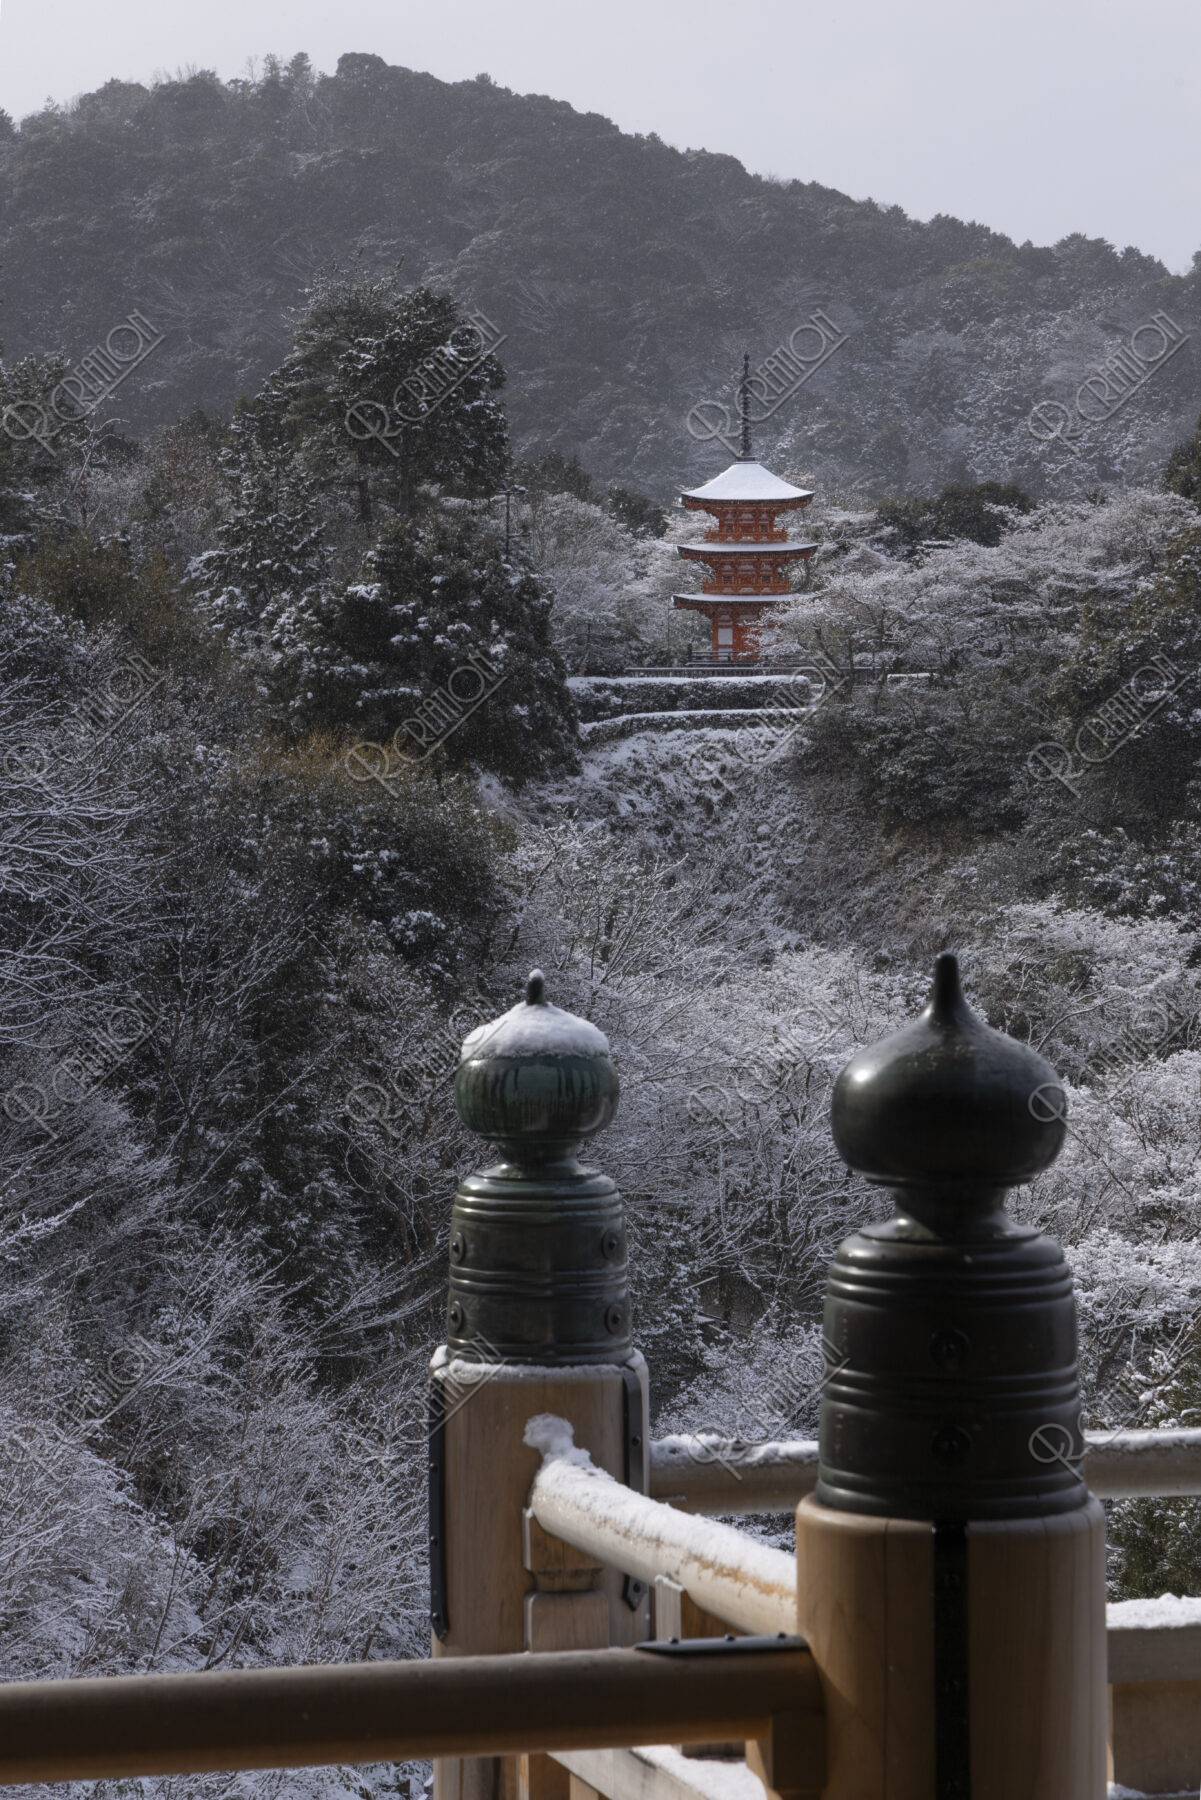 清水寺子安の塔雪景色